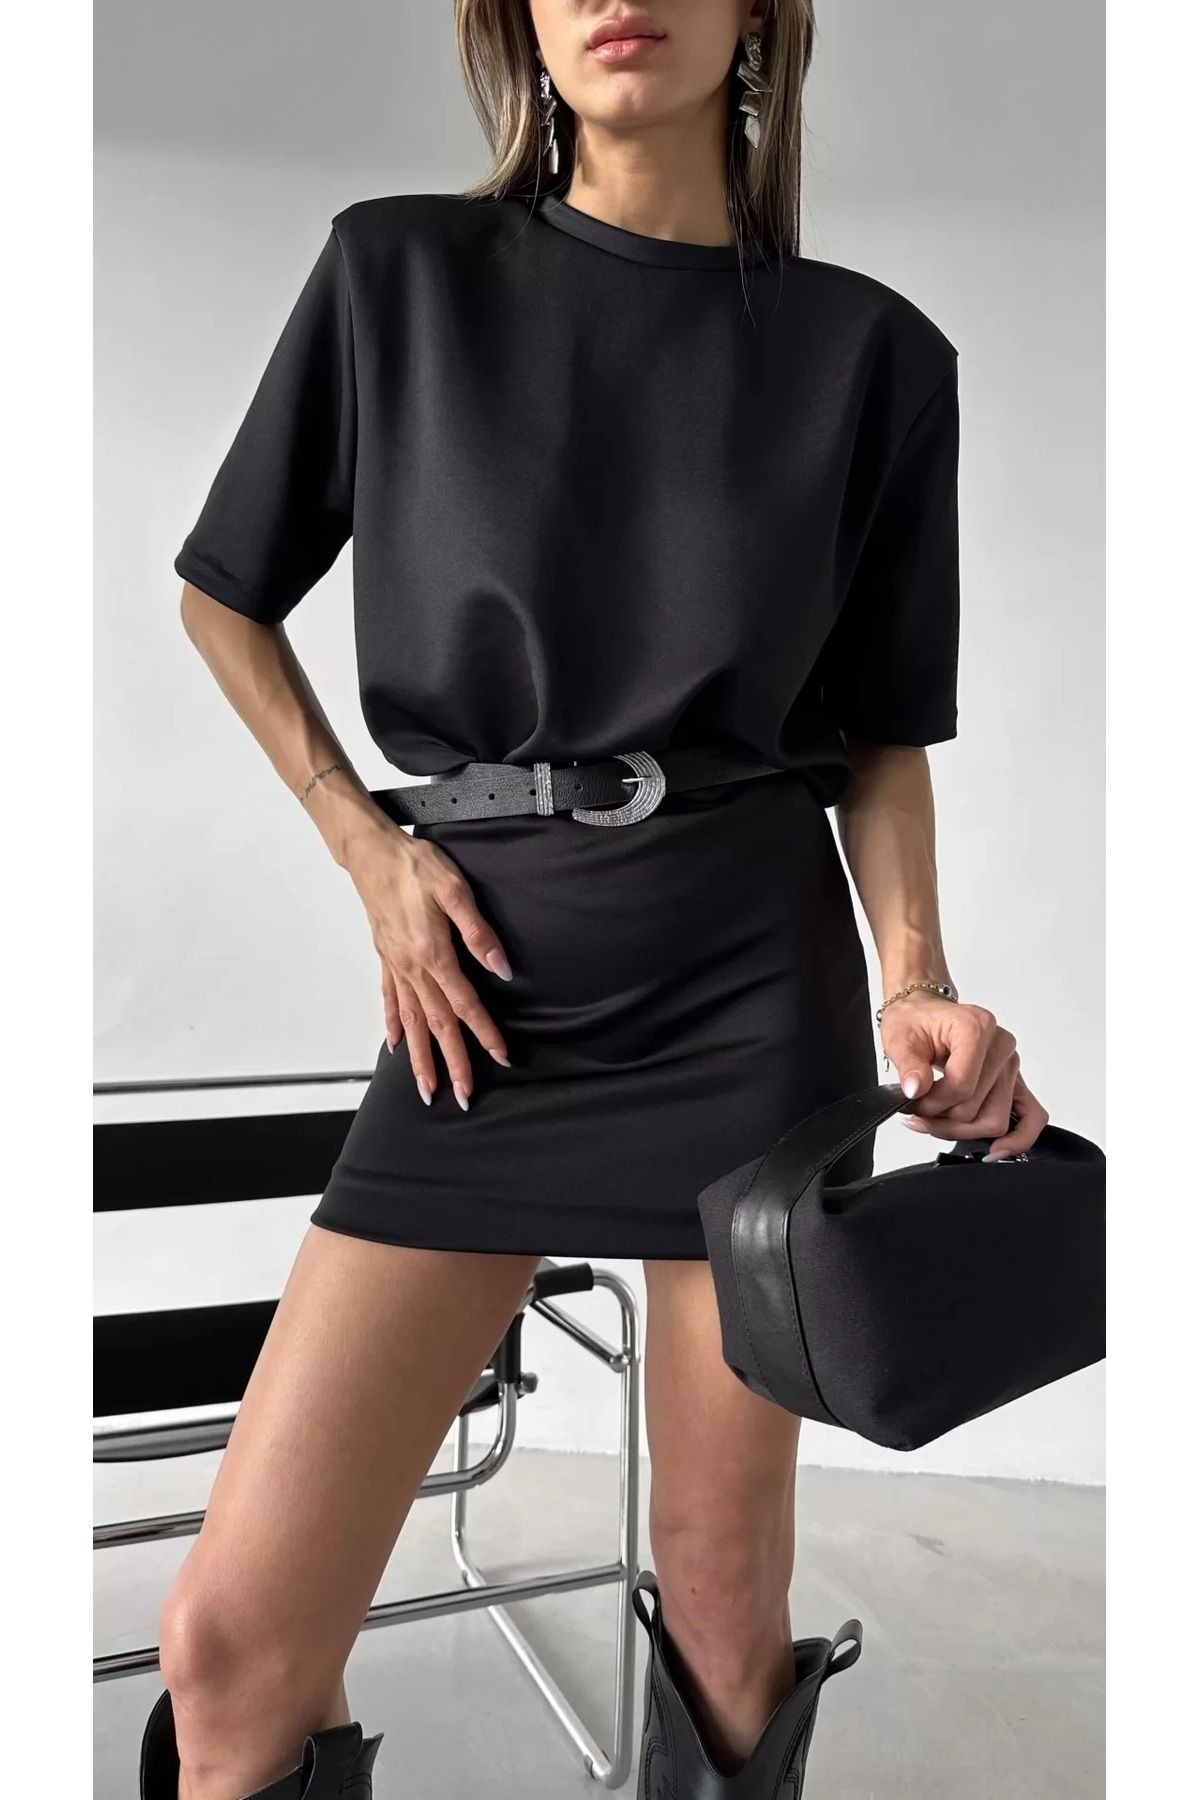 FİOXCO Kadın Casey Premium Vatkalı Siyah T-shirt Elbise (KEMERSİZ)